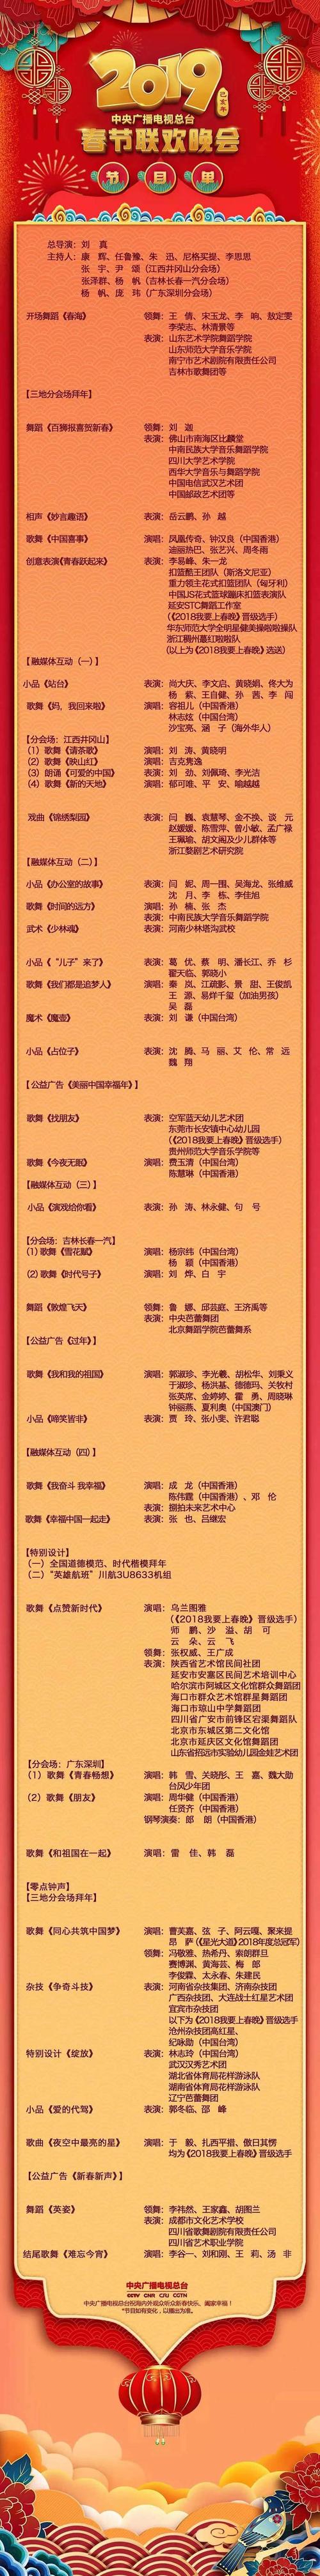 2019年中央广播电视总台春节联欢晚会节目单